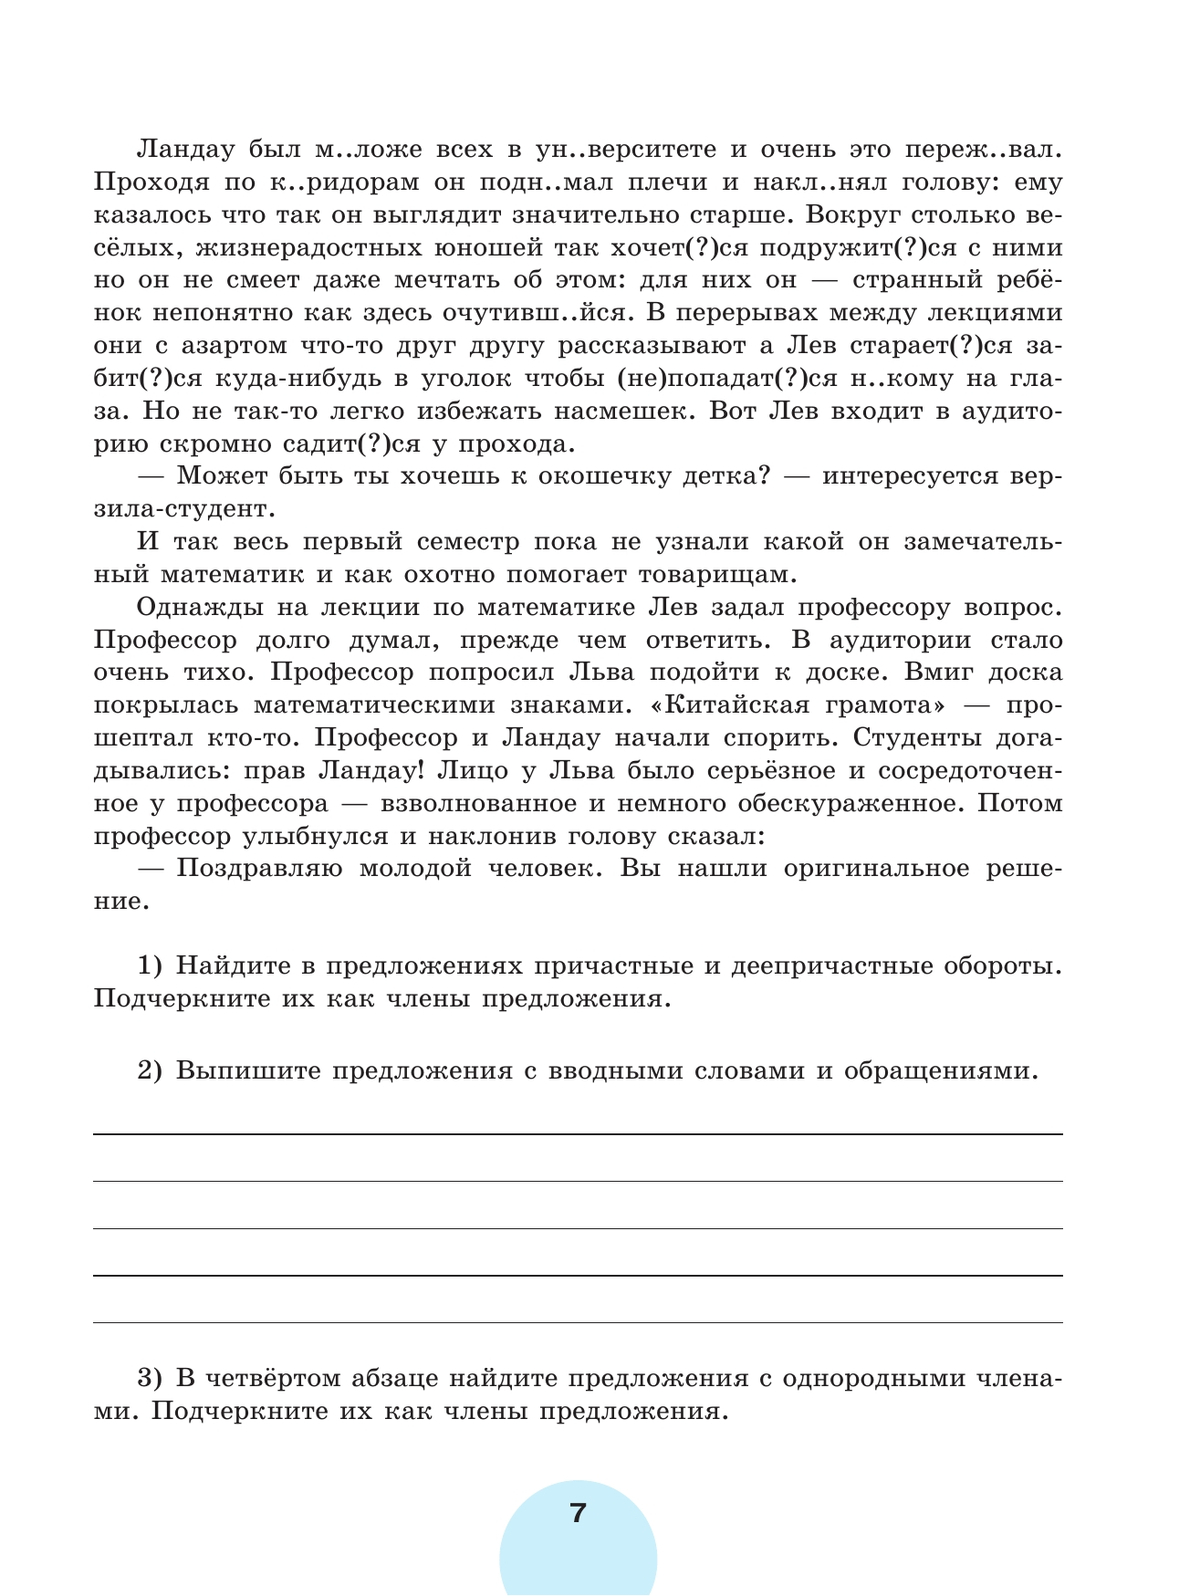 Русский язык. Рабочая тетрадь. 8 класс. В 2 ч. Часть 2 7